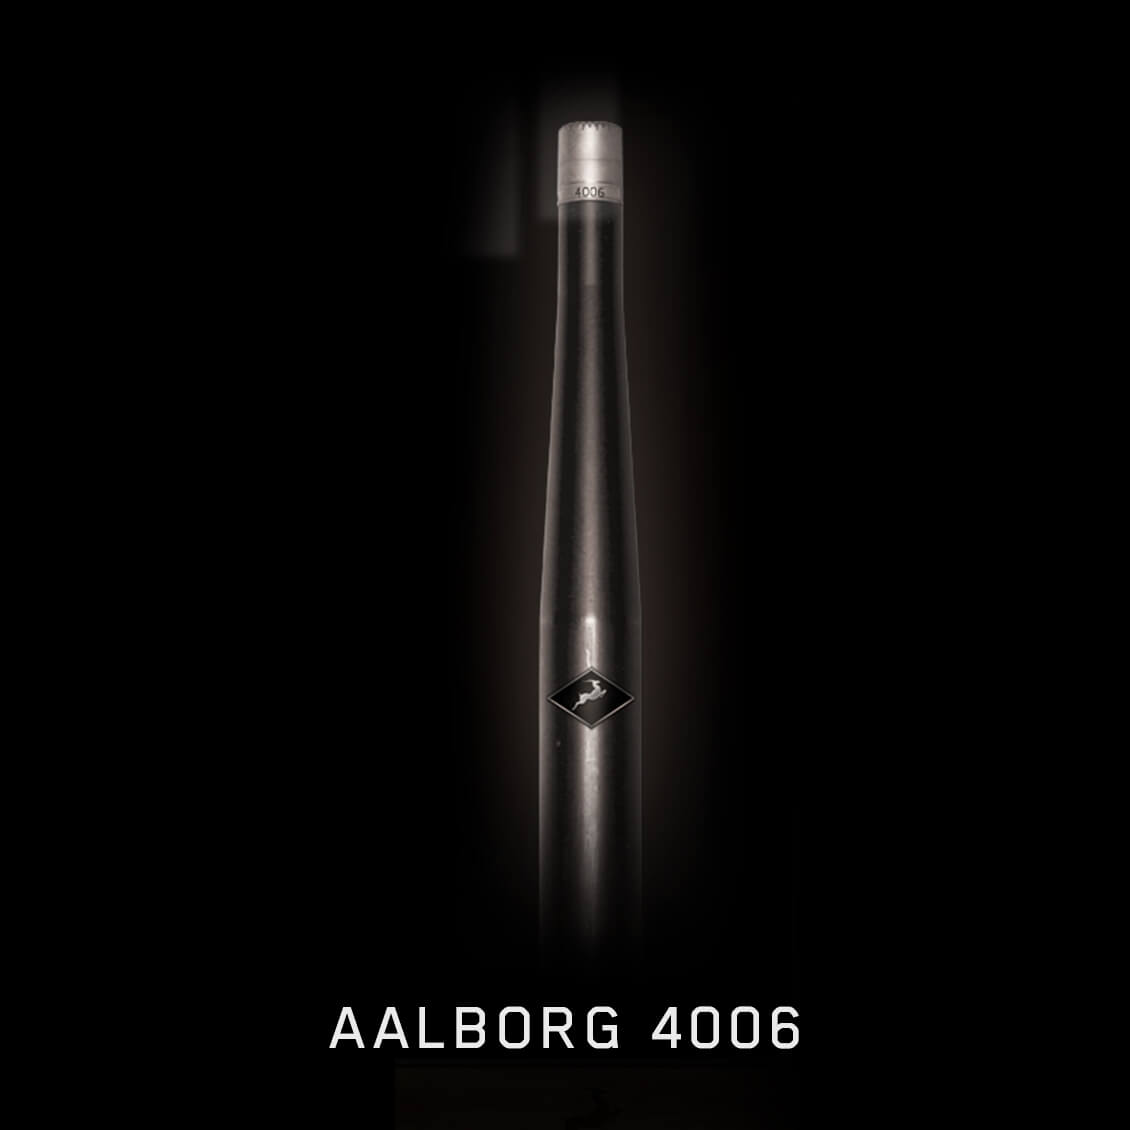 Aalborg 4006